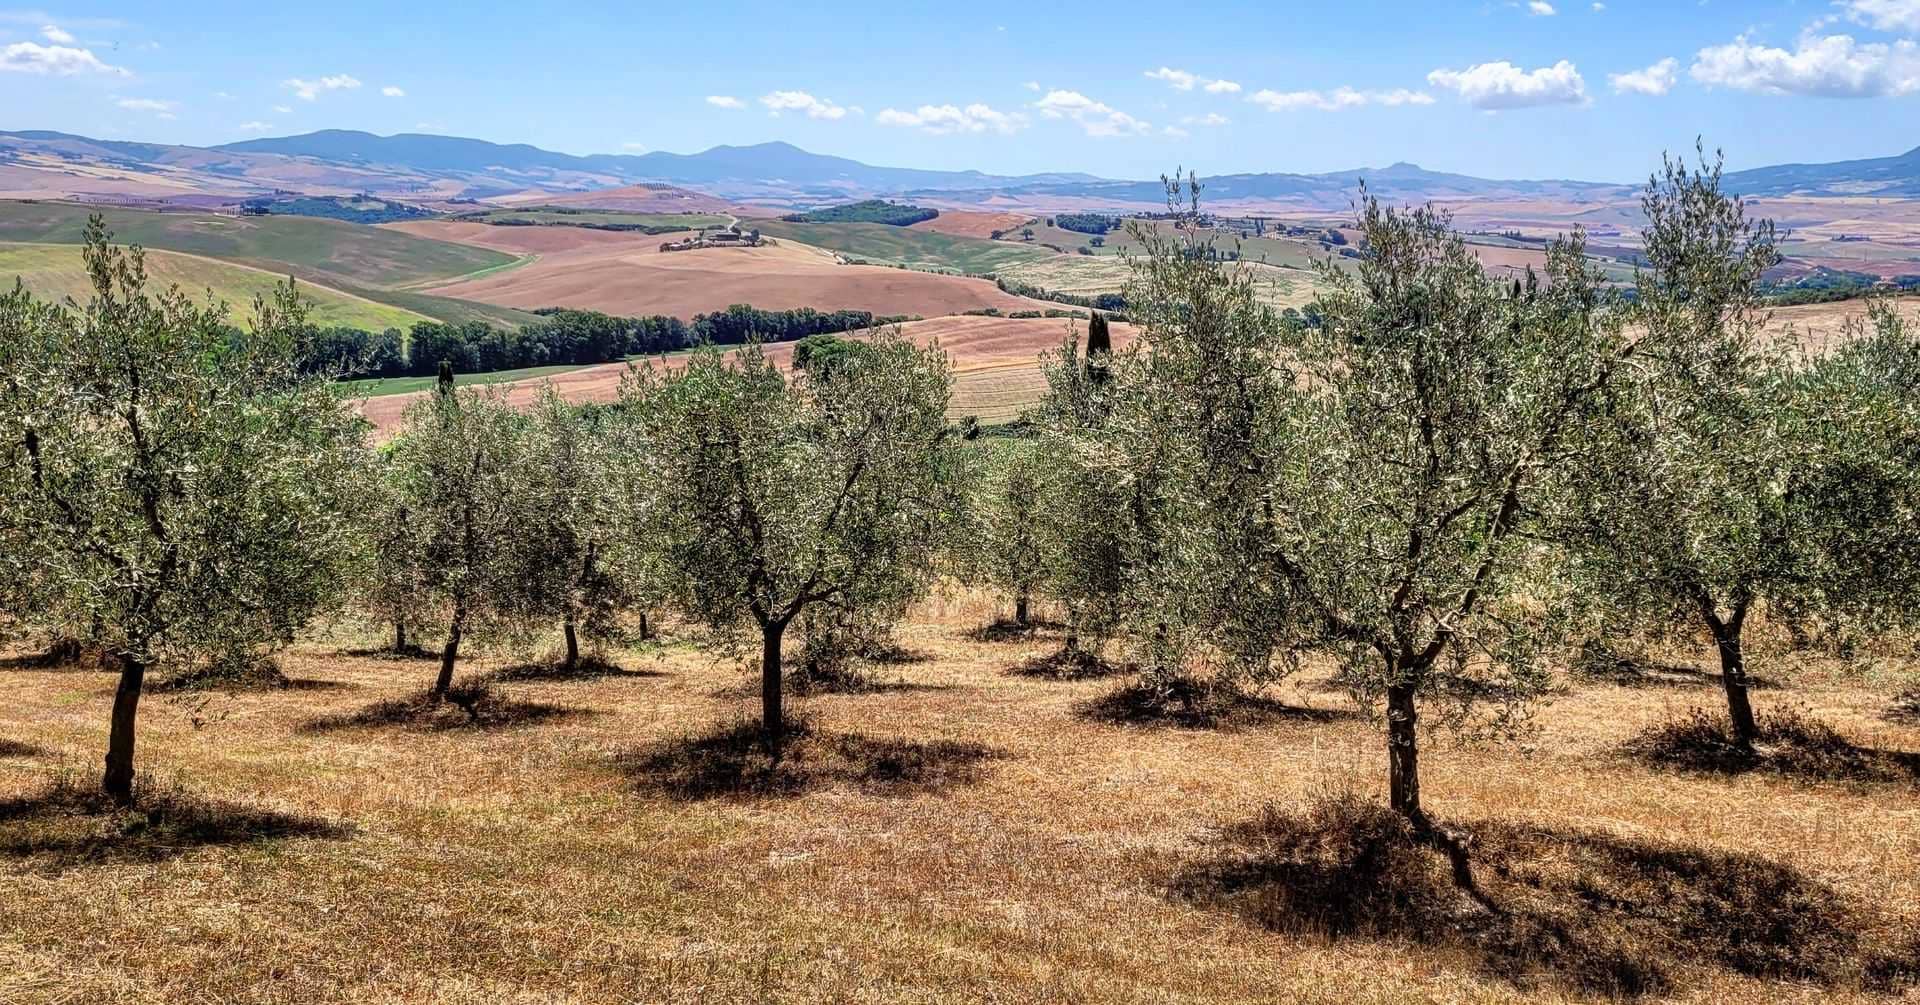 europa-produktionsunternehmen-in-der-toskana-landwirte-bewältigen-die-herausforderungen-des-klimas-und-streben-nach-zeiten-eines-olivenols-von-hoher-qualitat